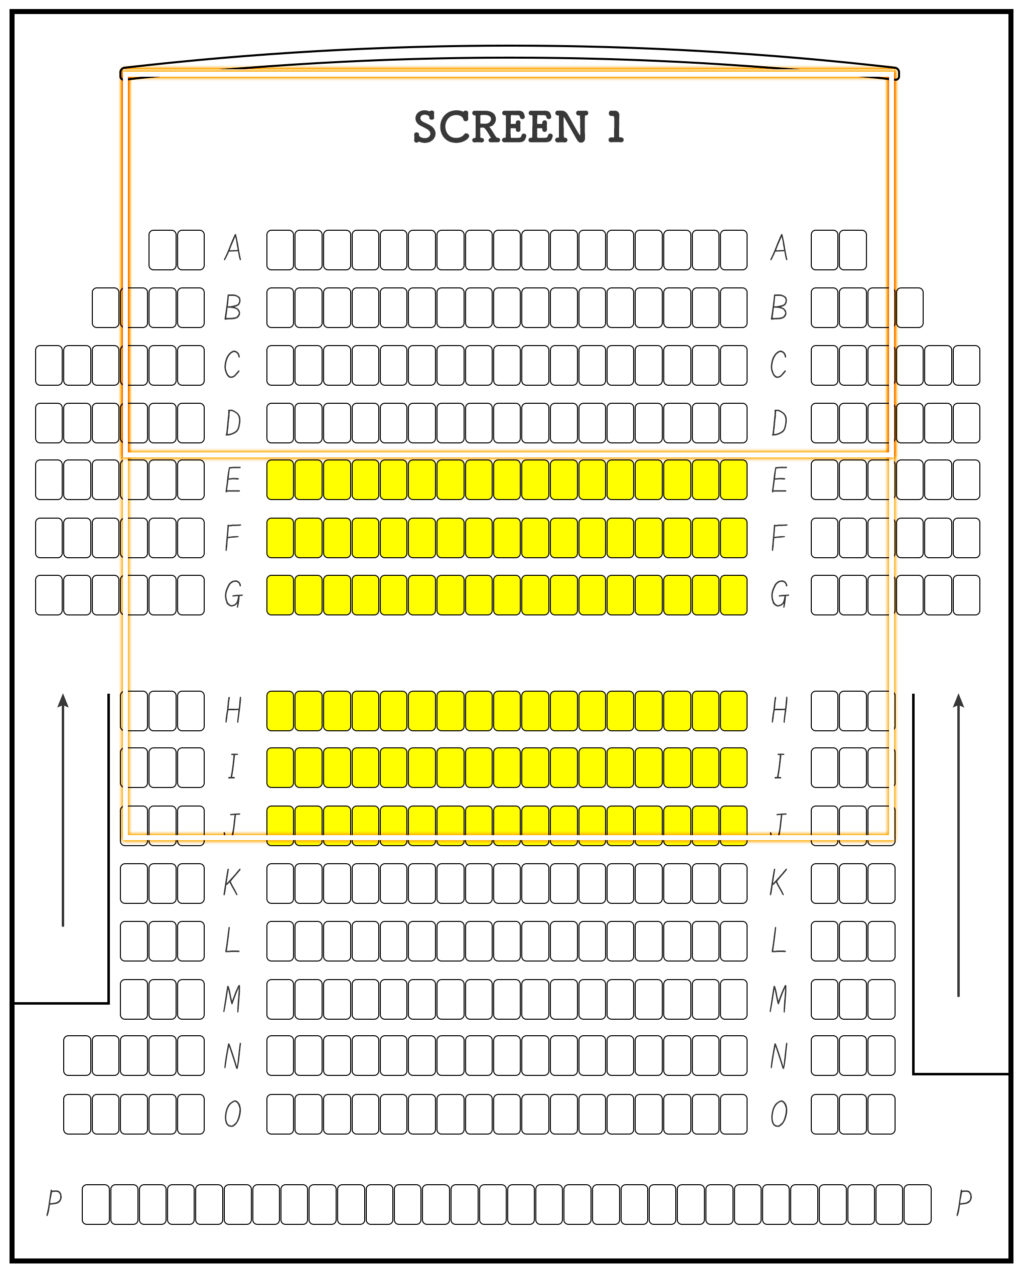 映画館で見やすい座席はどの位置 目的ごとにおすすめな座席位置を紹介 Yugoの不思議な音楽の国